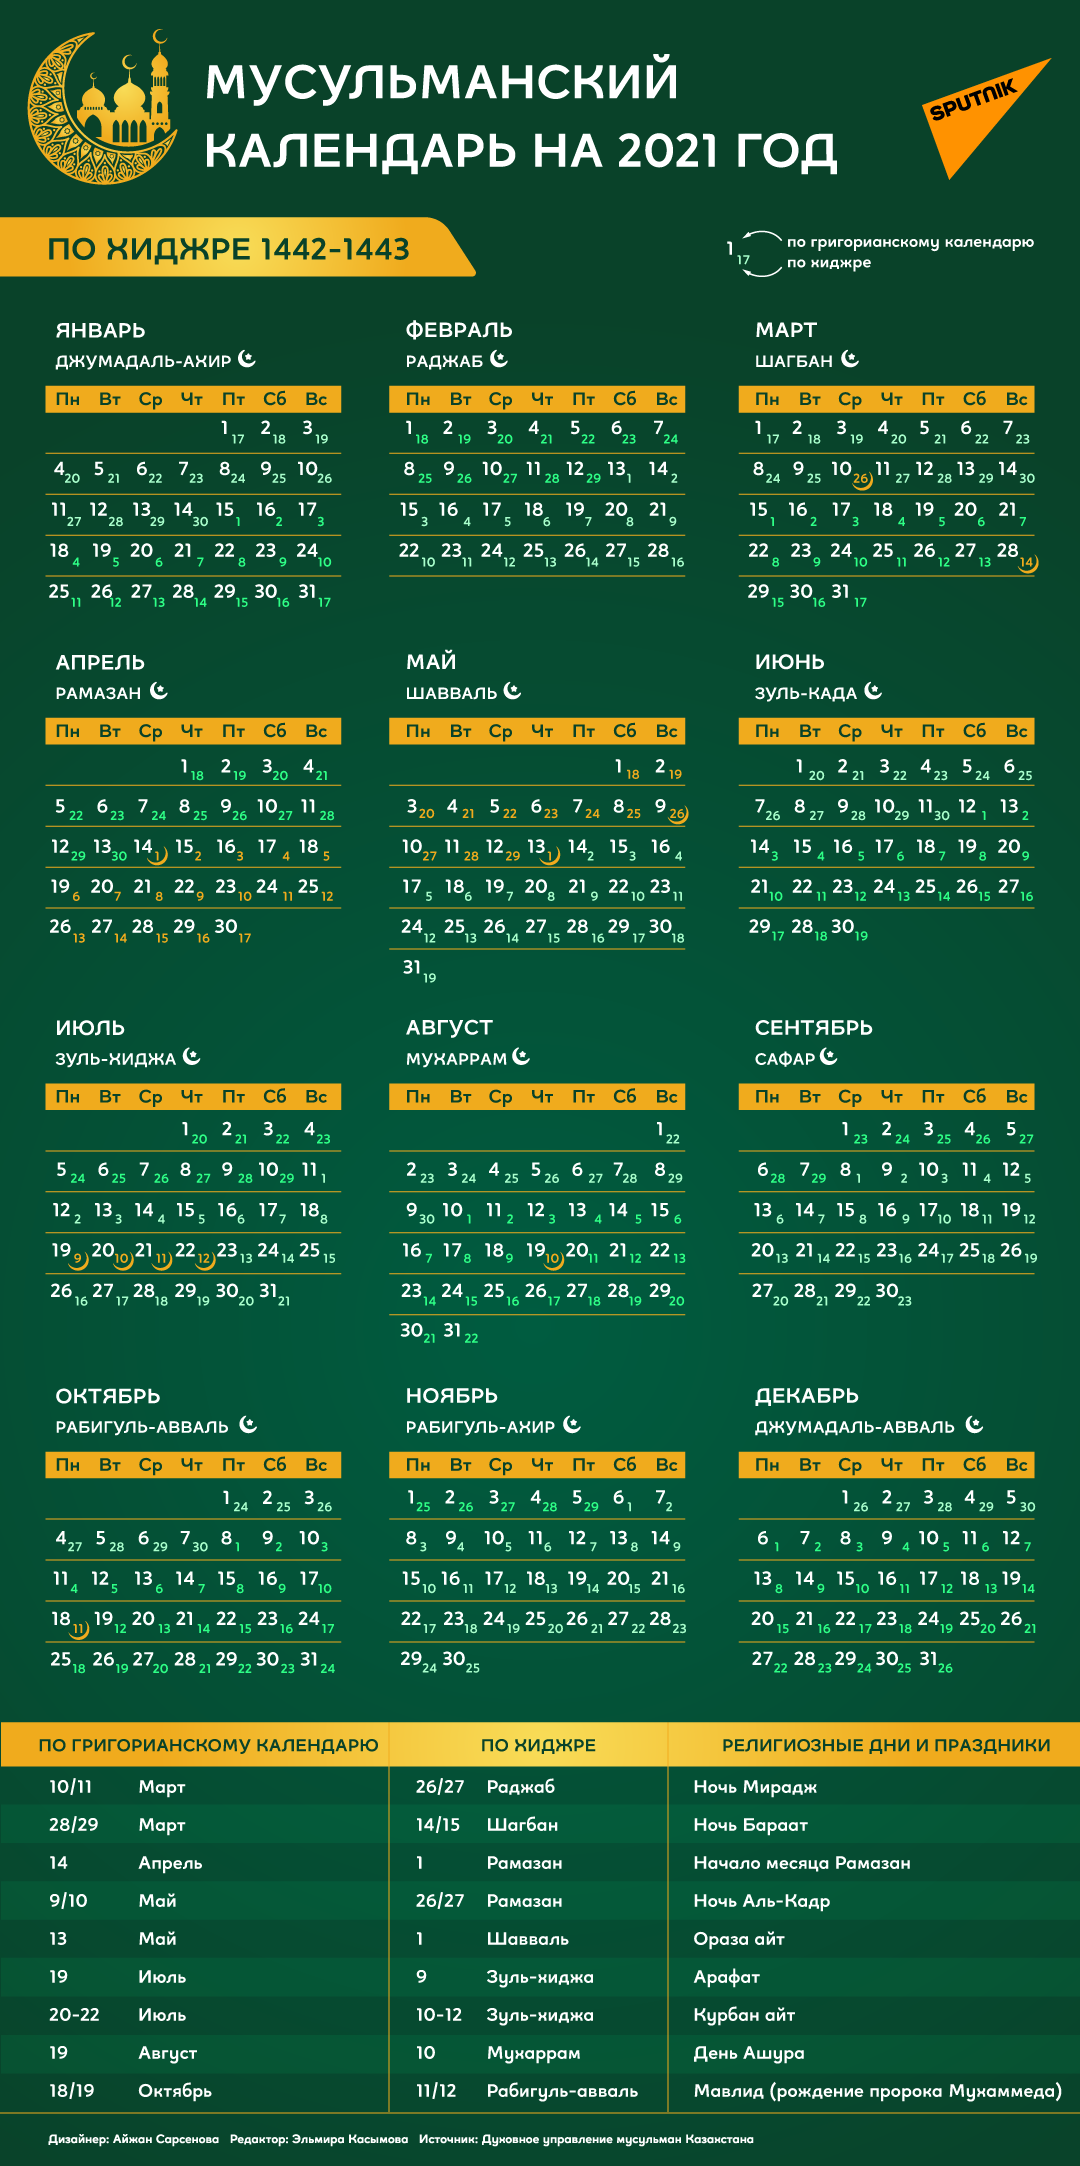 Мусульманский календарь на 2021 год - 21.01.2021, Sputnik Казахстан